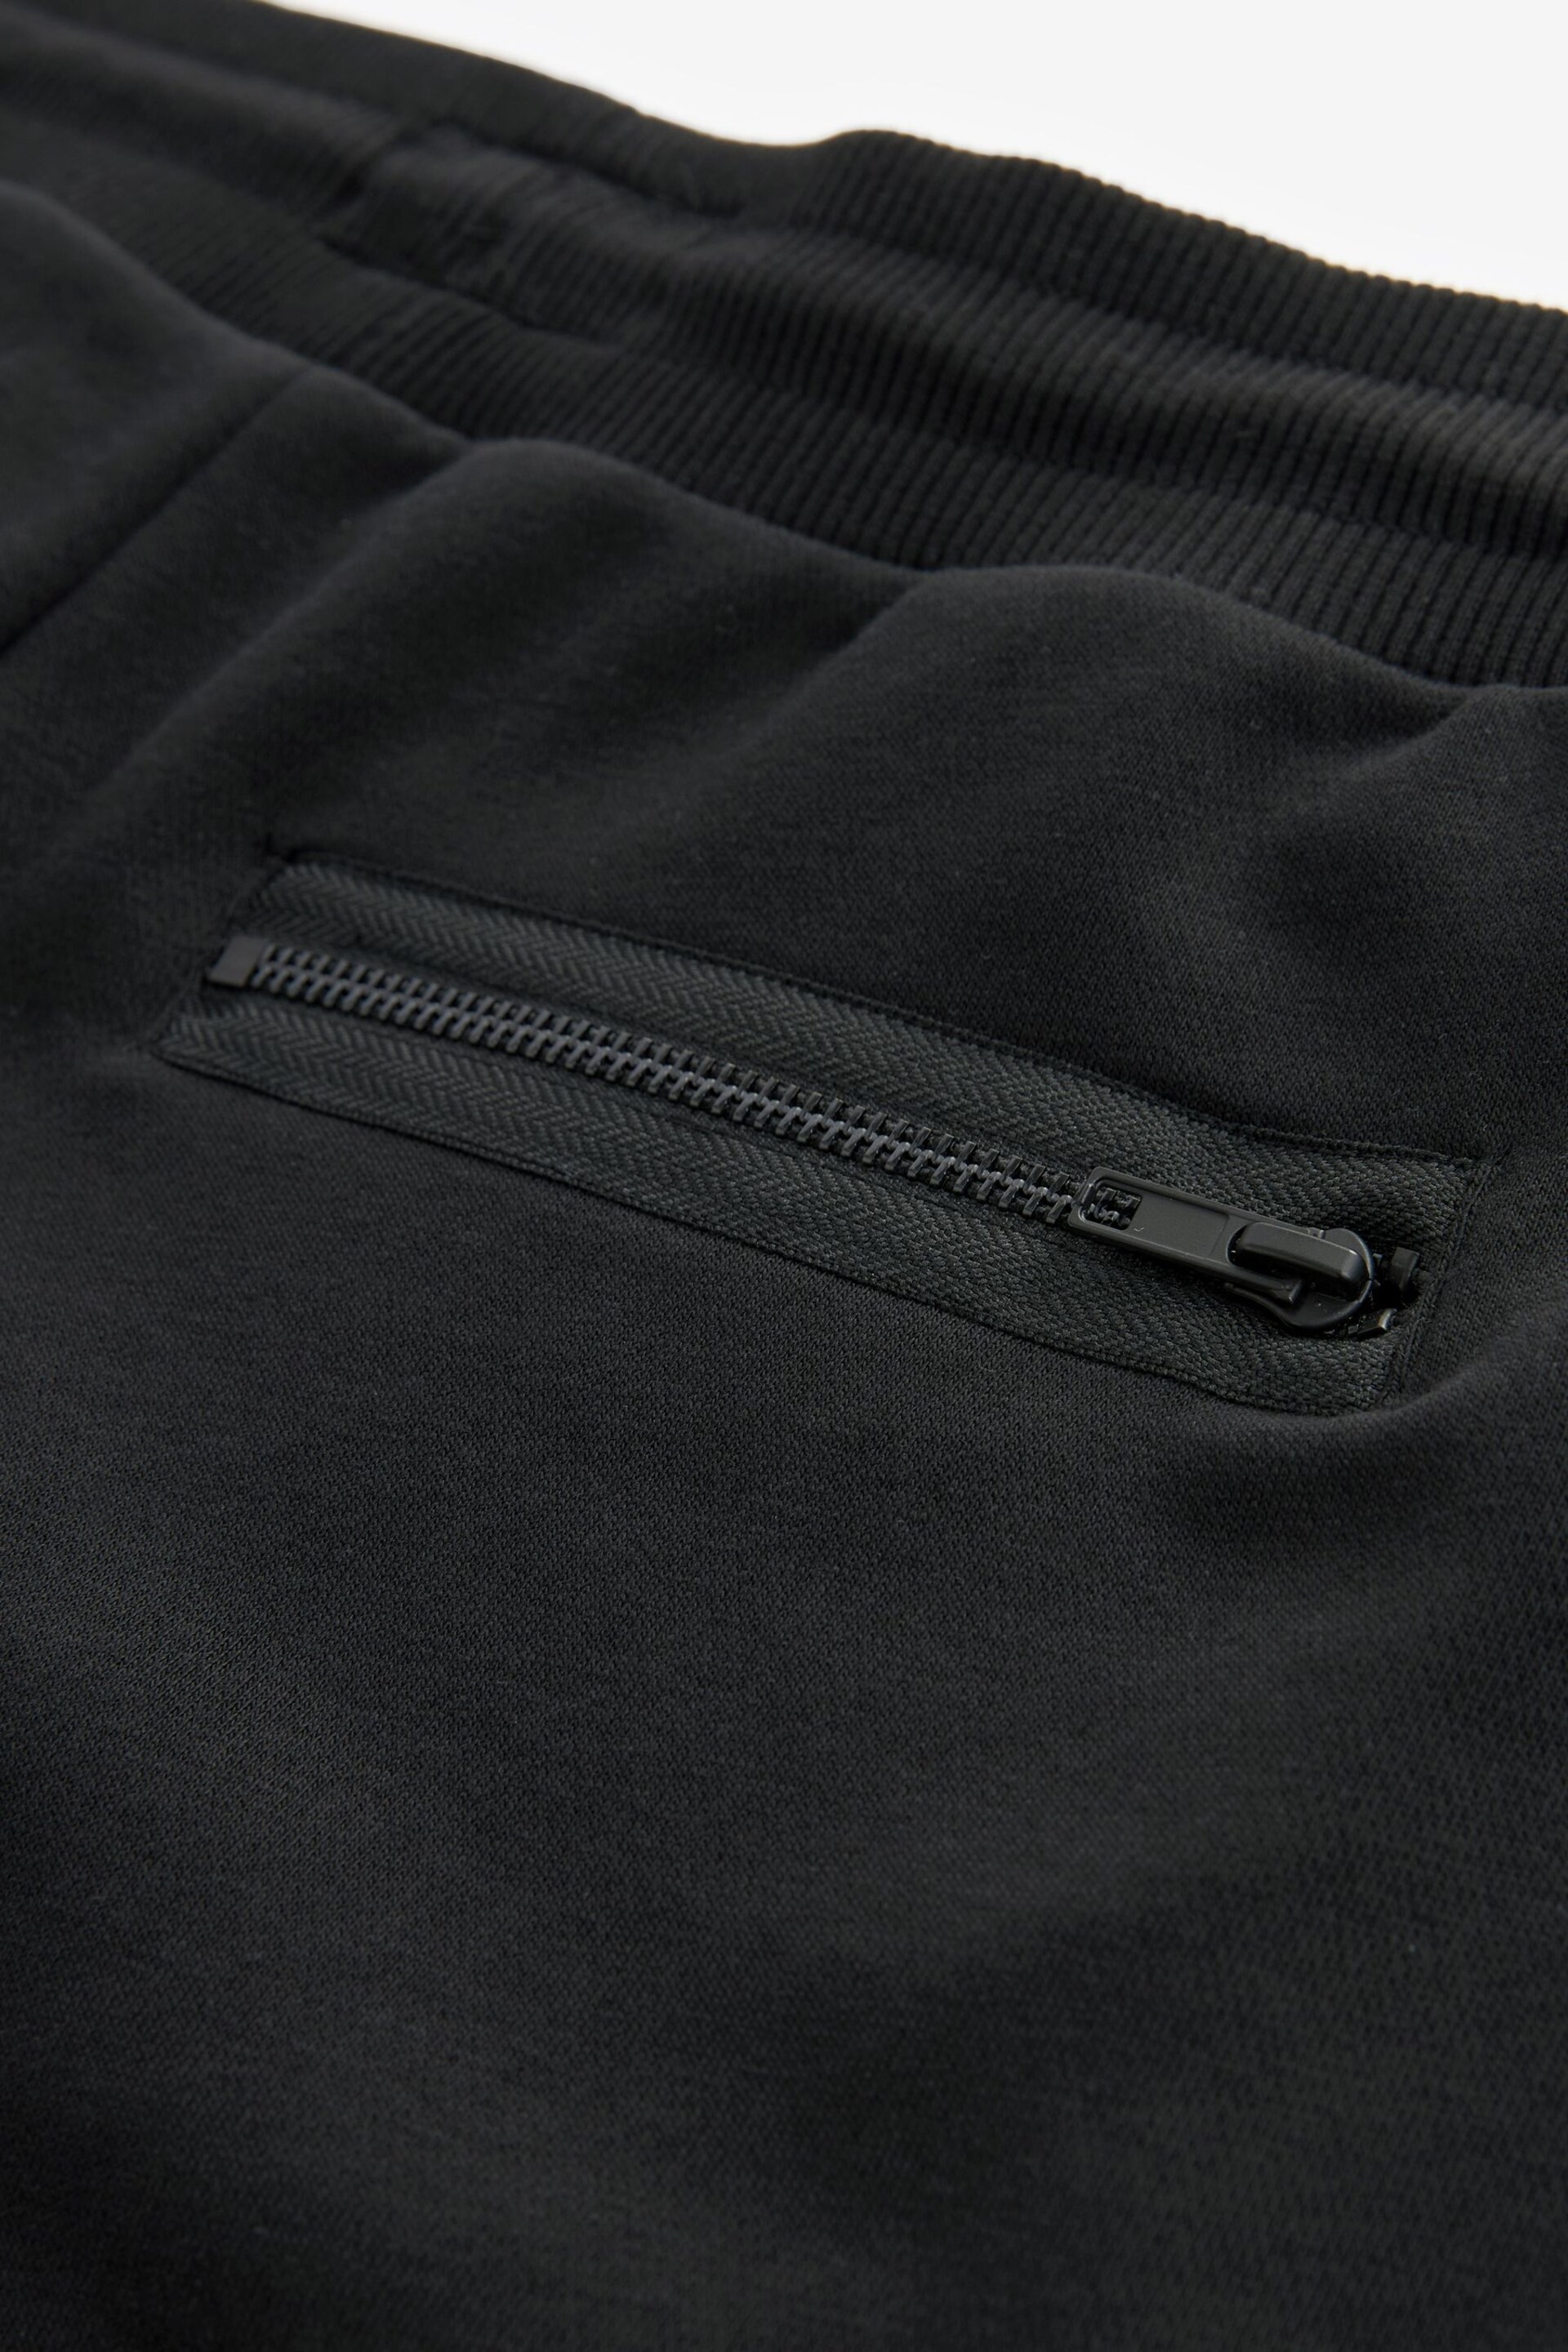 Black Utility Jersey Shorts - Image 8 of 9